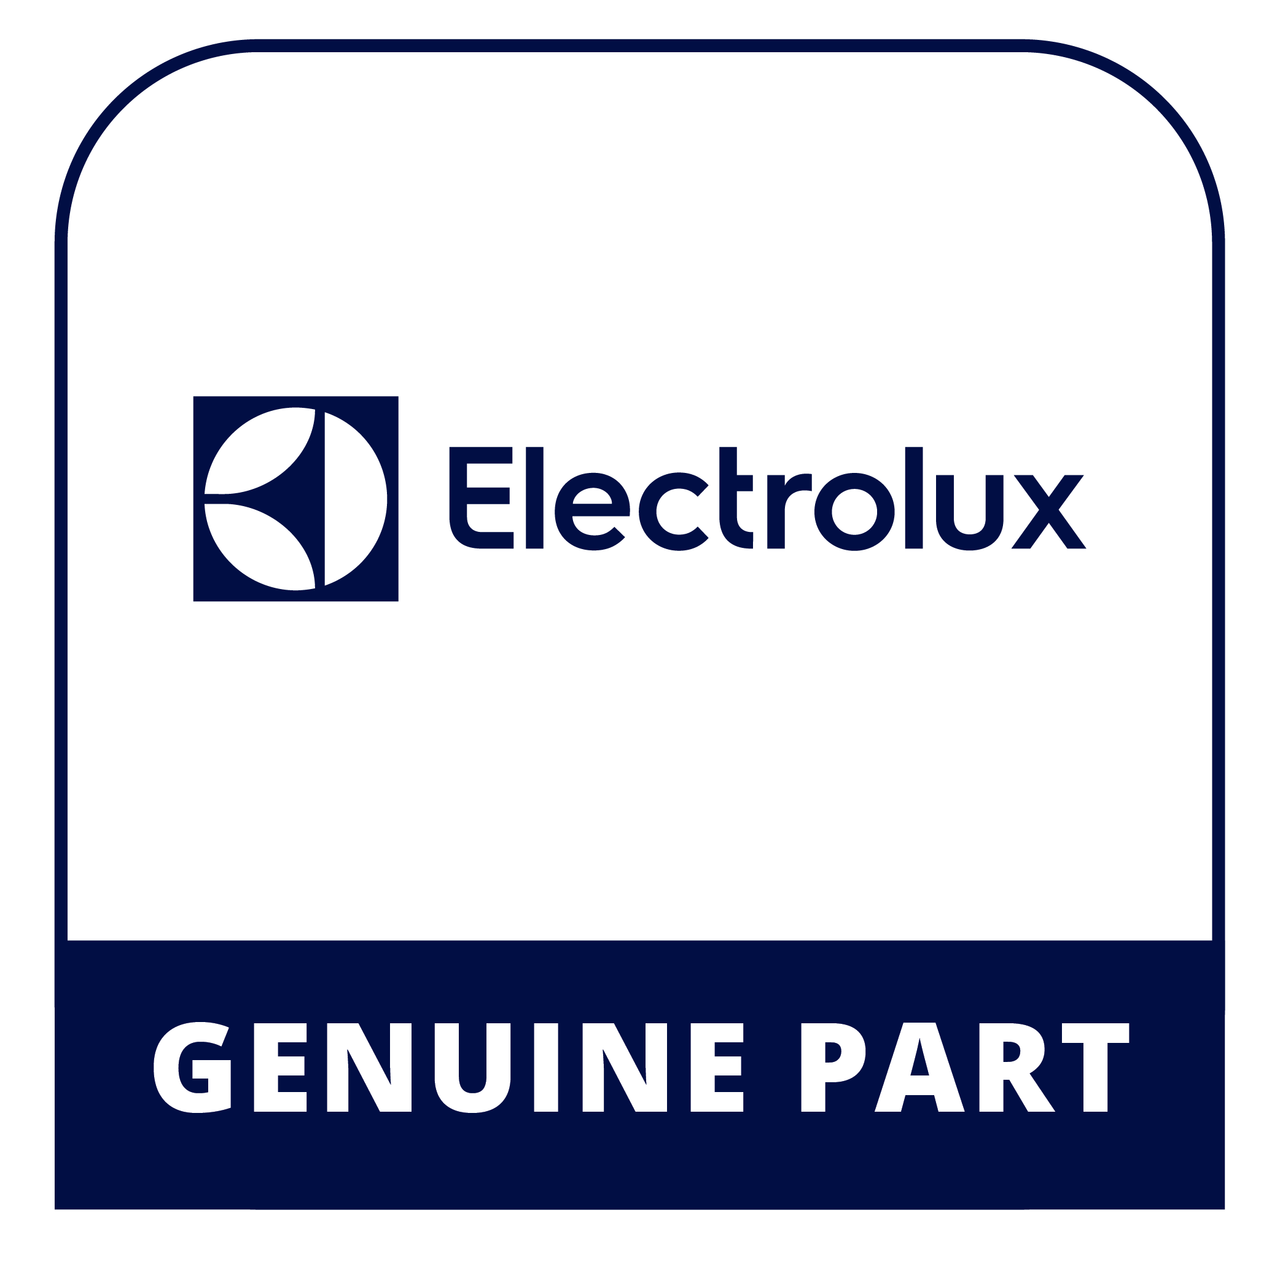 Frigidaire - Electrolux 240312415 Door Stop - Genuine Electrolux Part